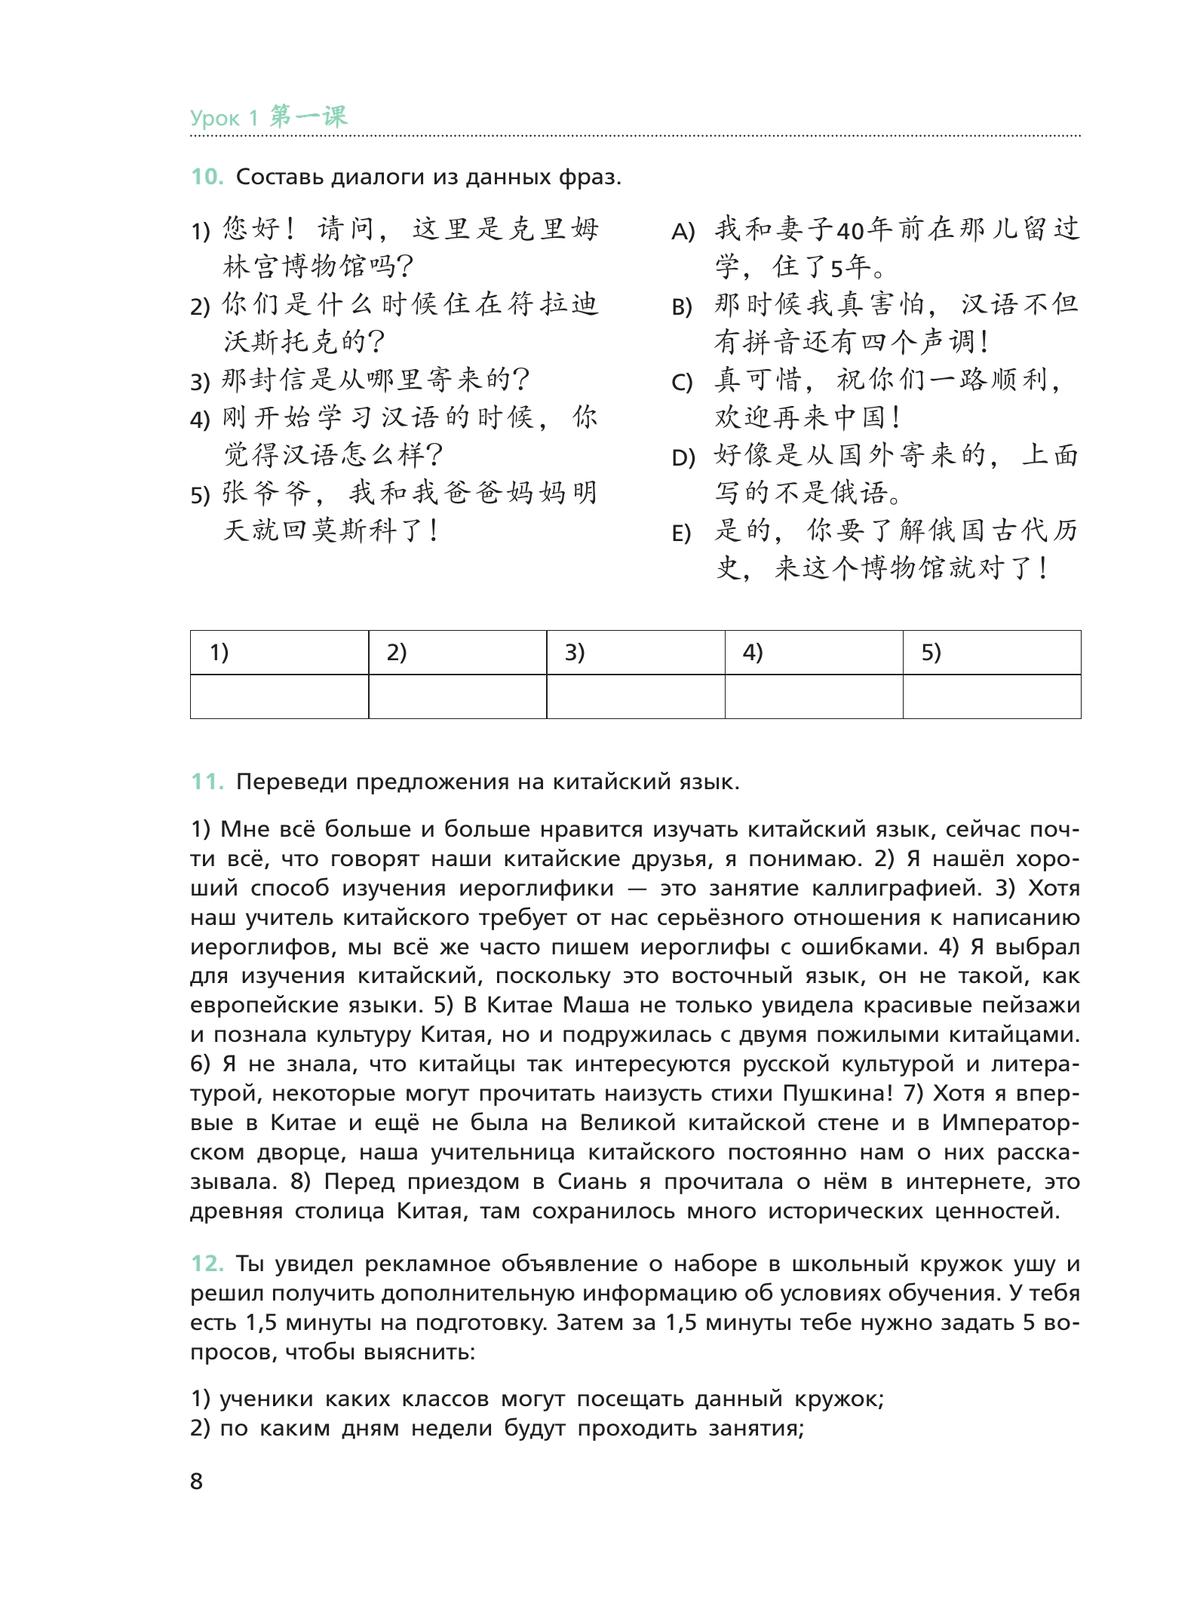 Китайский язык. Рабочая тетрадь. 9 класс 6